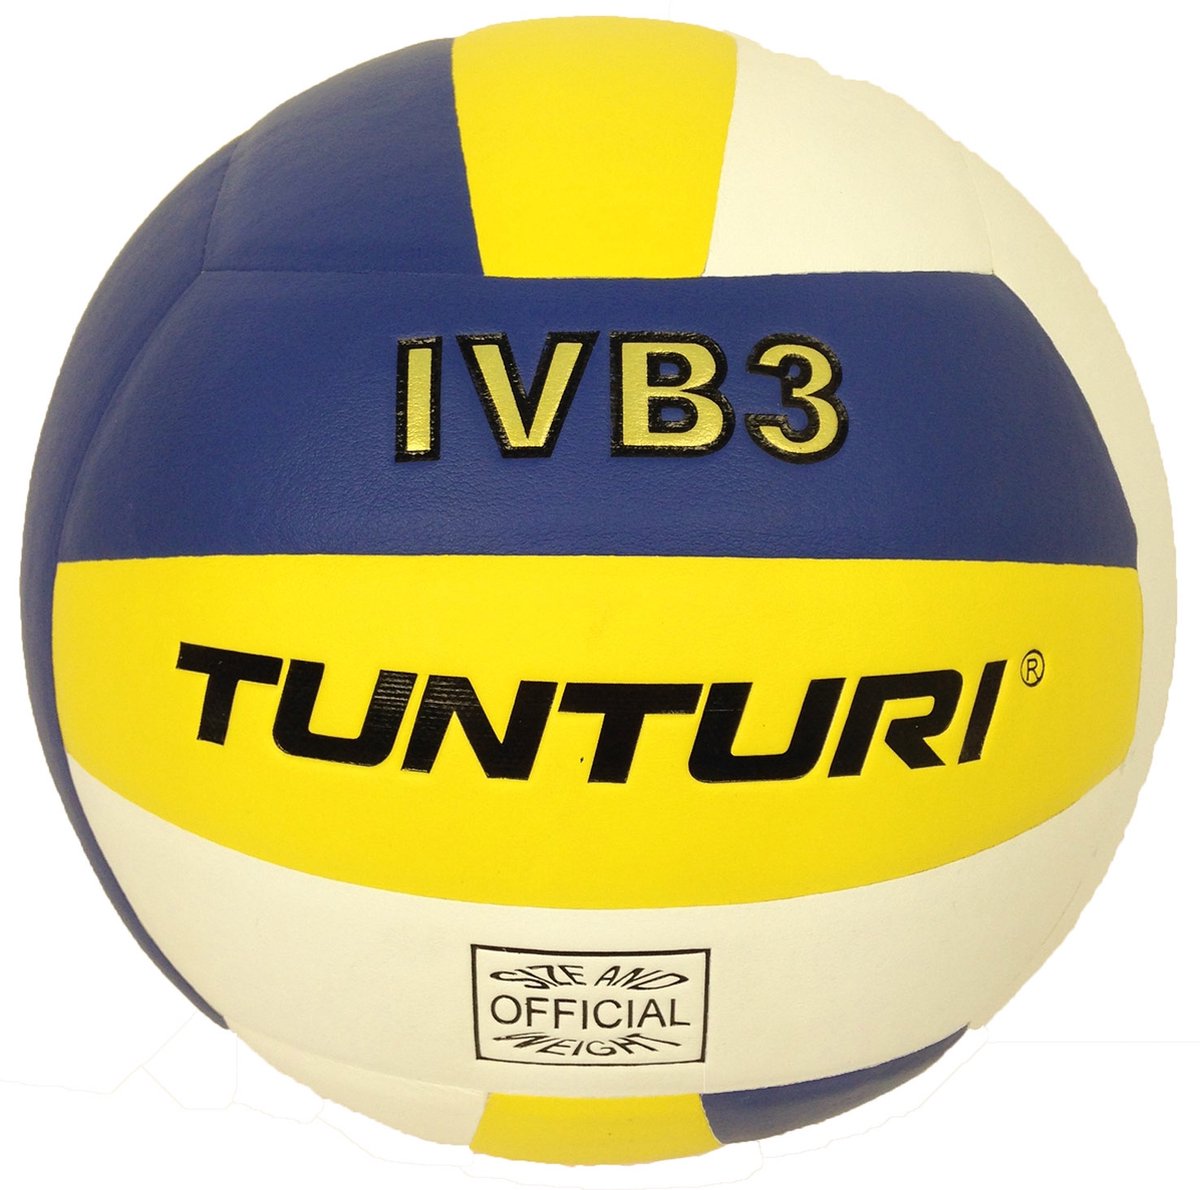 Tunturi Volleybal - Volleybal bal - IVB3 - Geel - Tunturi